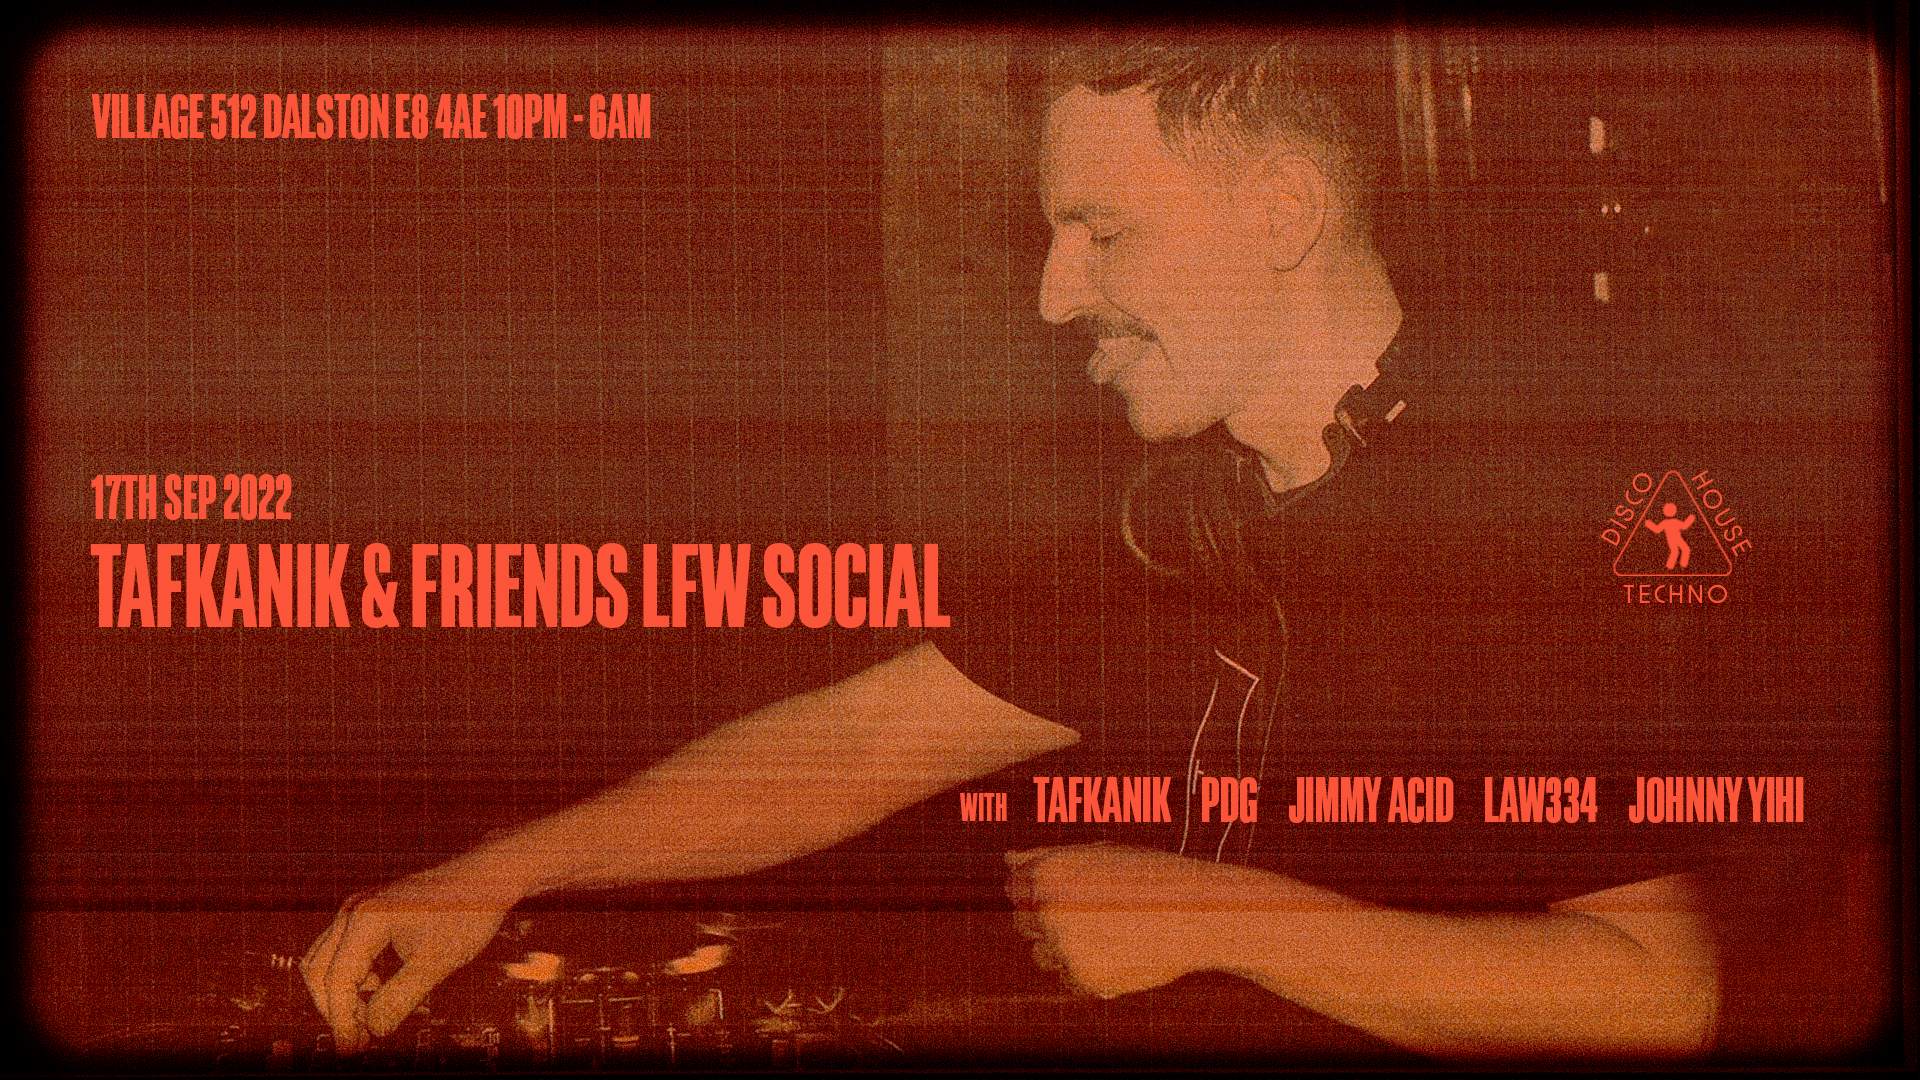 Tafkanik & friends LFW social - Flyer front